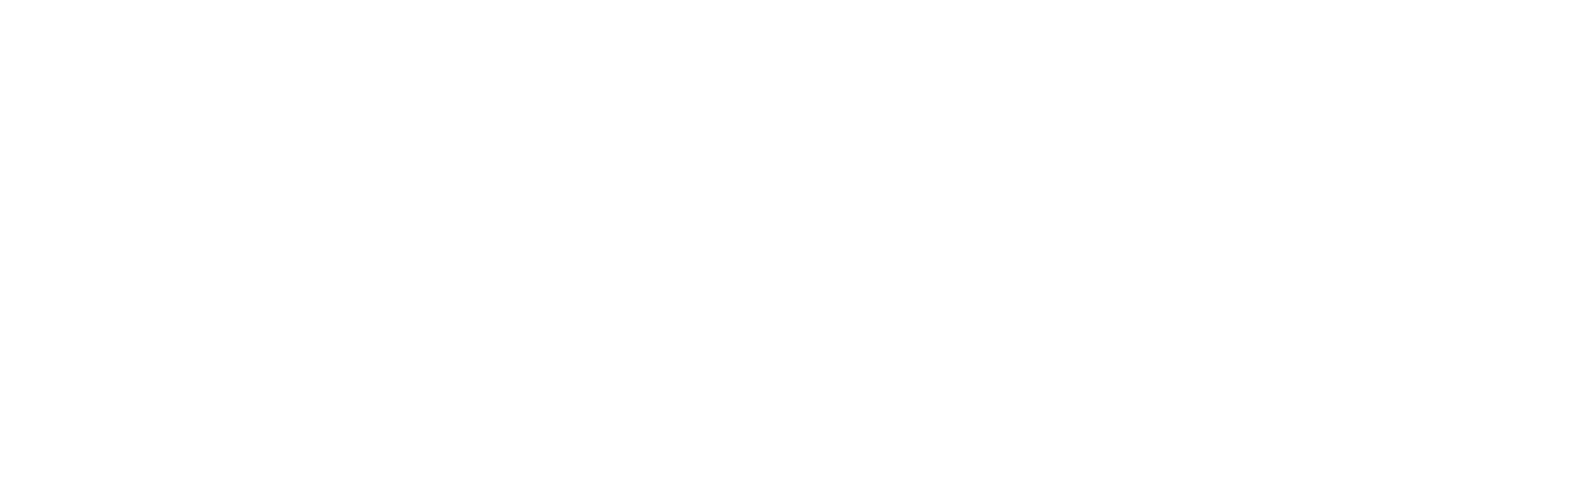 Dassault Systèmes logo large for dark backgrounds (transparent PNG)